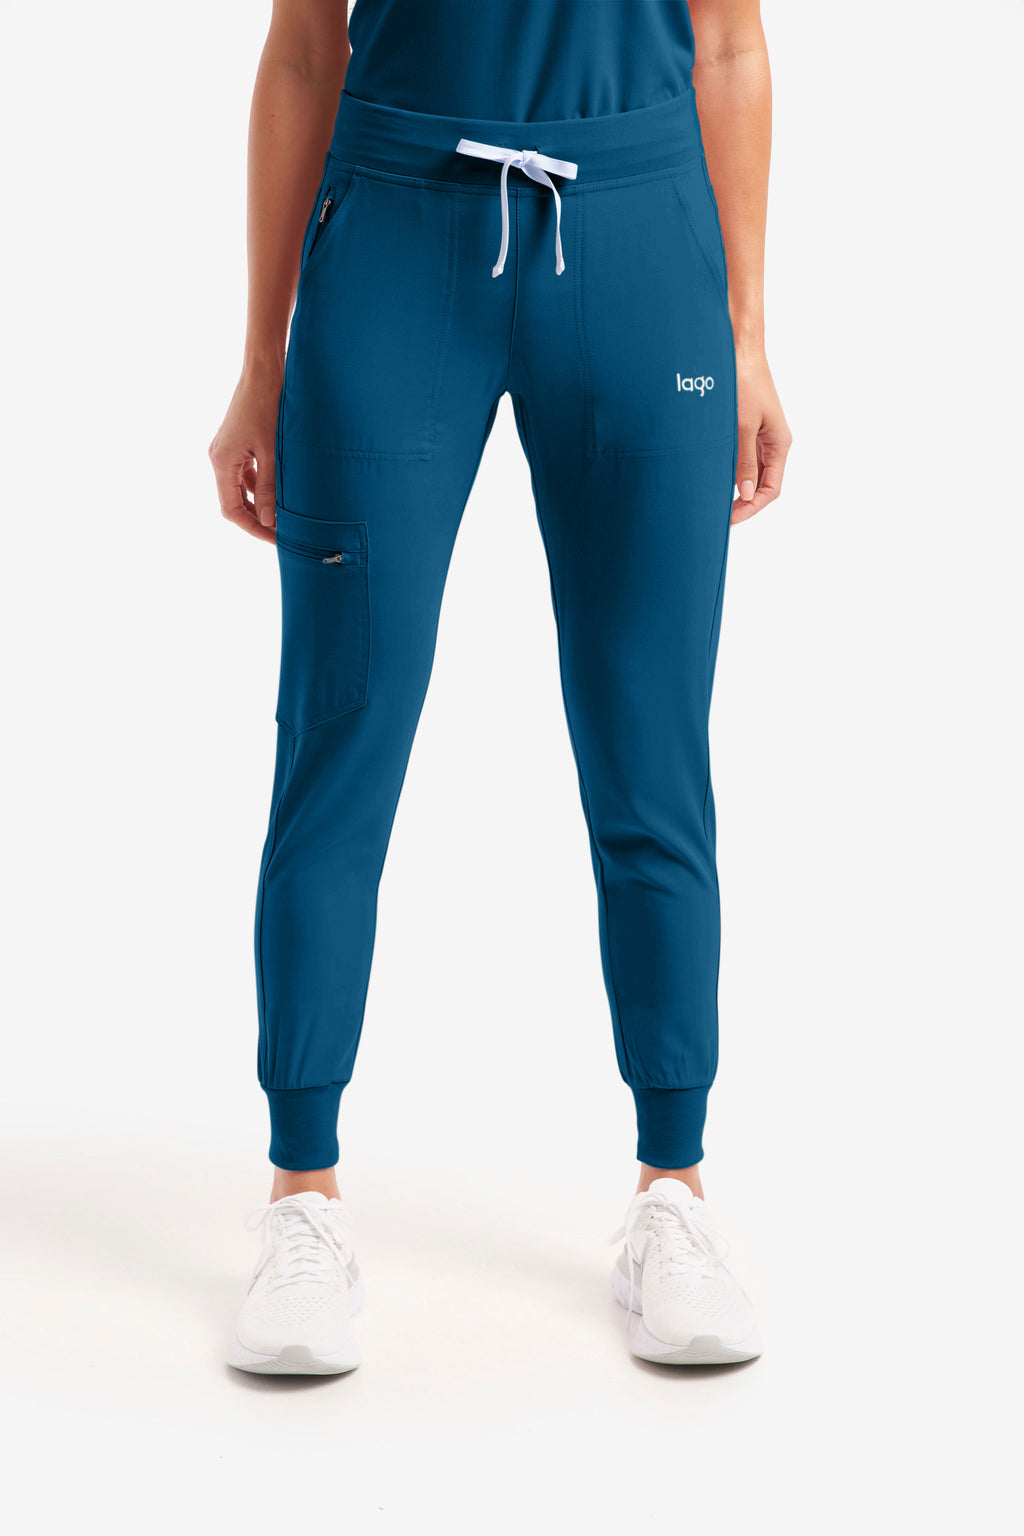 Loungewear Femme | Bas De Jogging En Jersey Resserré Aux Chevilles Bleu  Marine Et Ivoire, Pois Indisciplinés | Boden — Éveil du corps